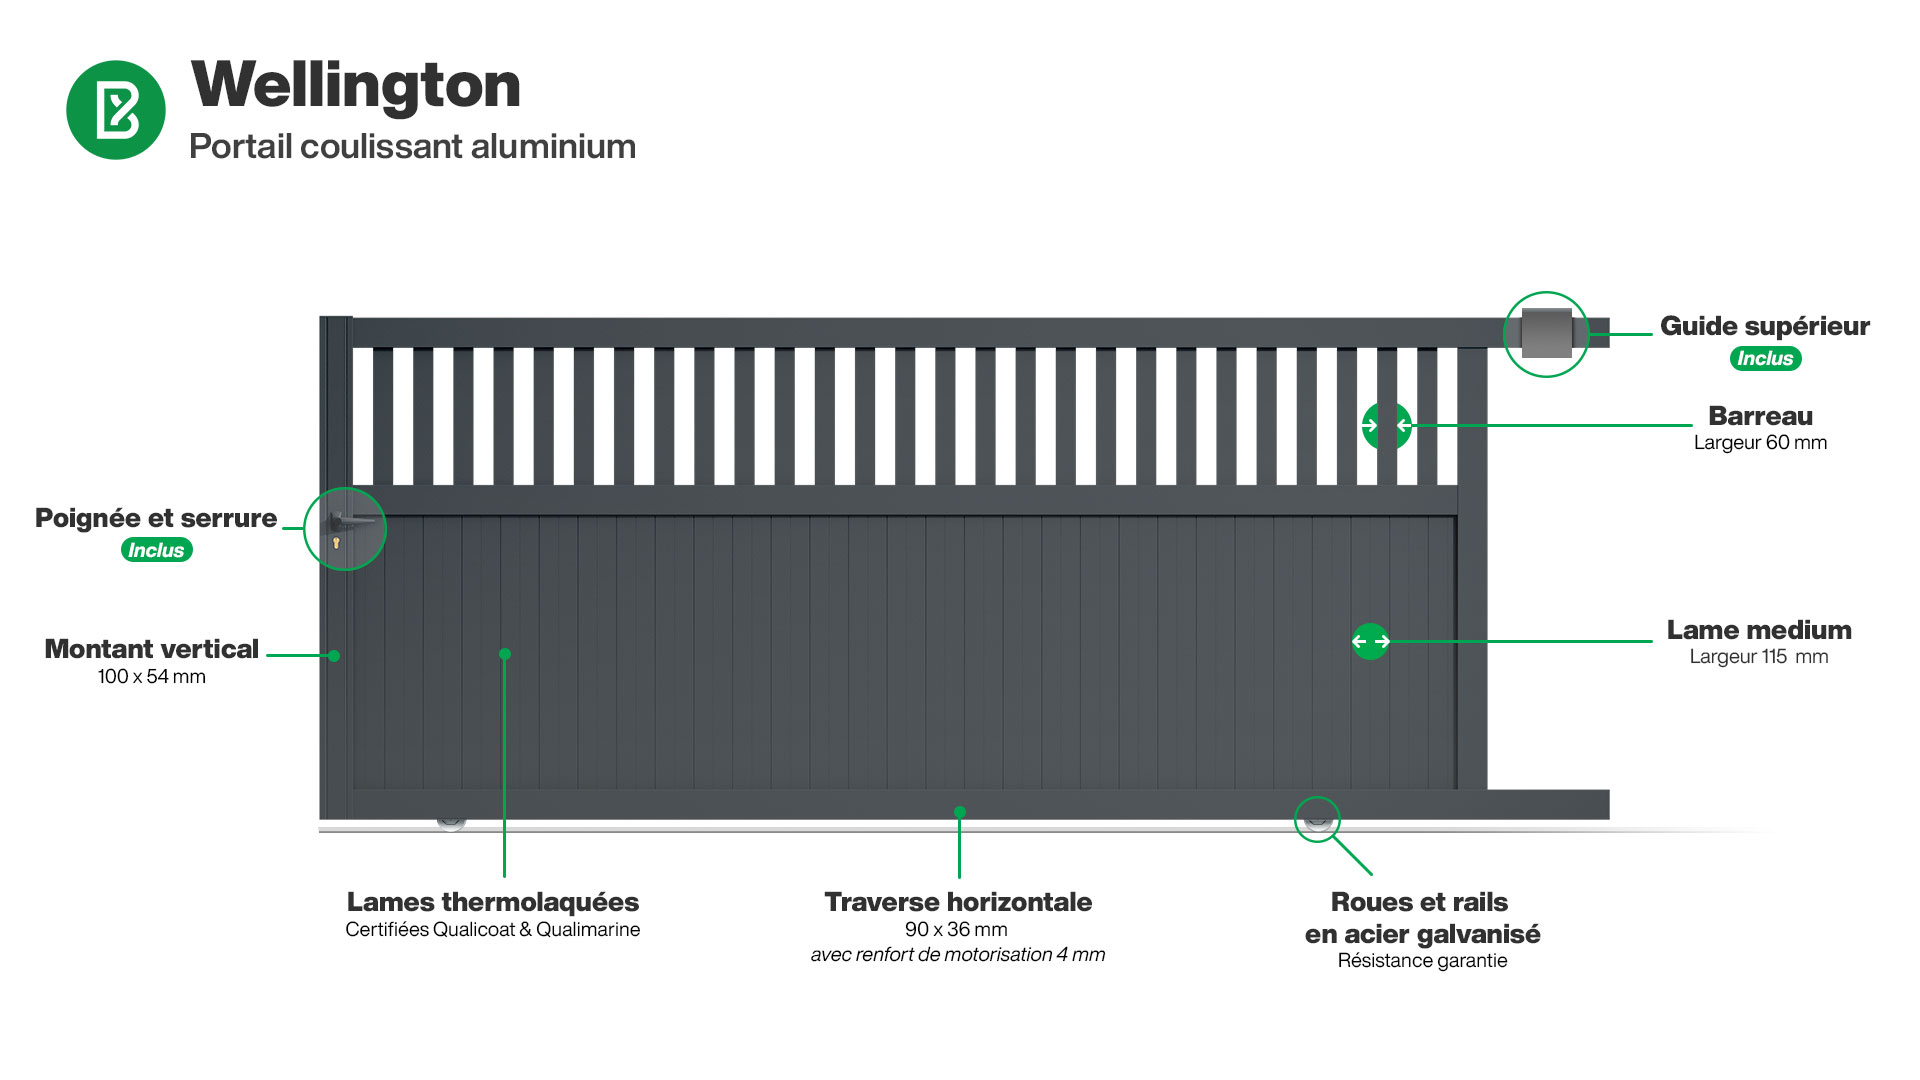 Portail : Infographie d'un portail coulissant aluminium modèle WELLINGTON